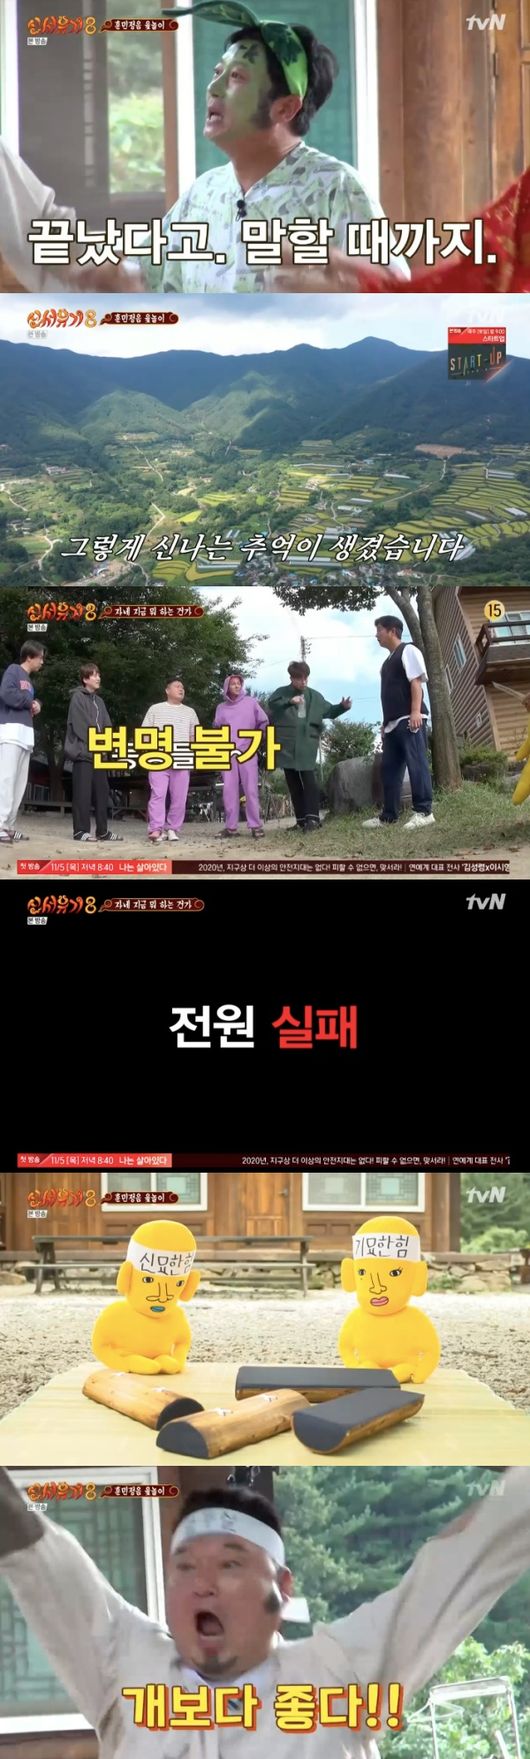 [사진=tvN 방송화면] '신서유기8'에서 강호동, 이수근, 피오가 훈민정음 윷놀이로 대역전극을 펼치며 웃음을 선사했다.